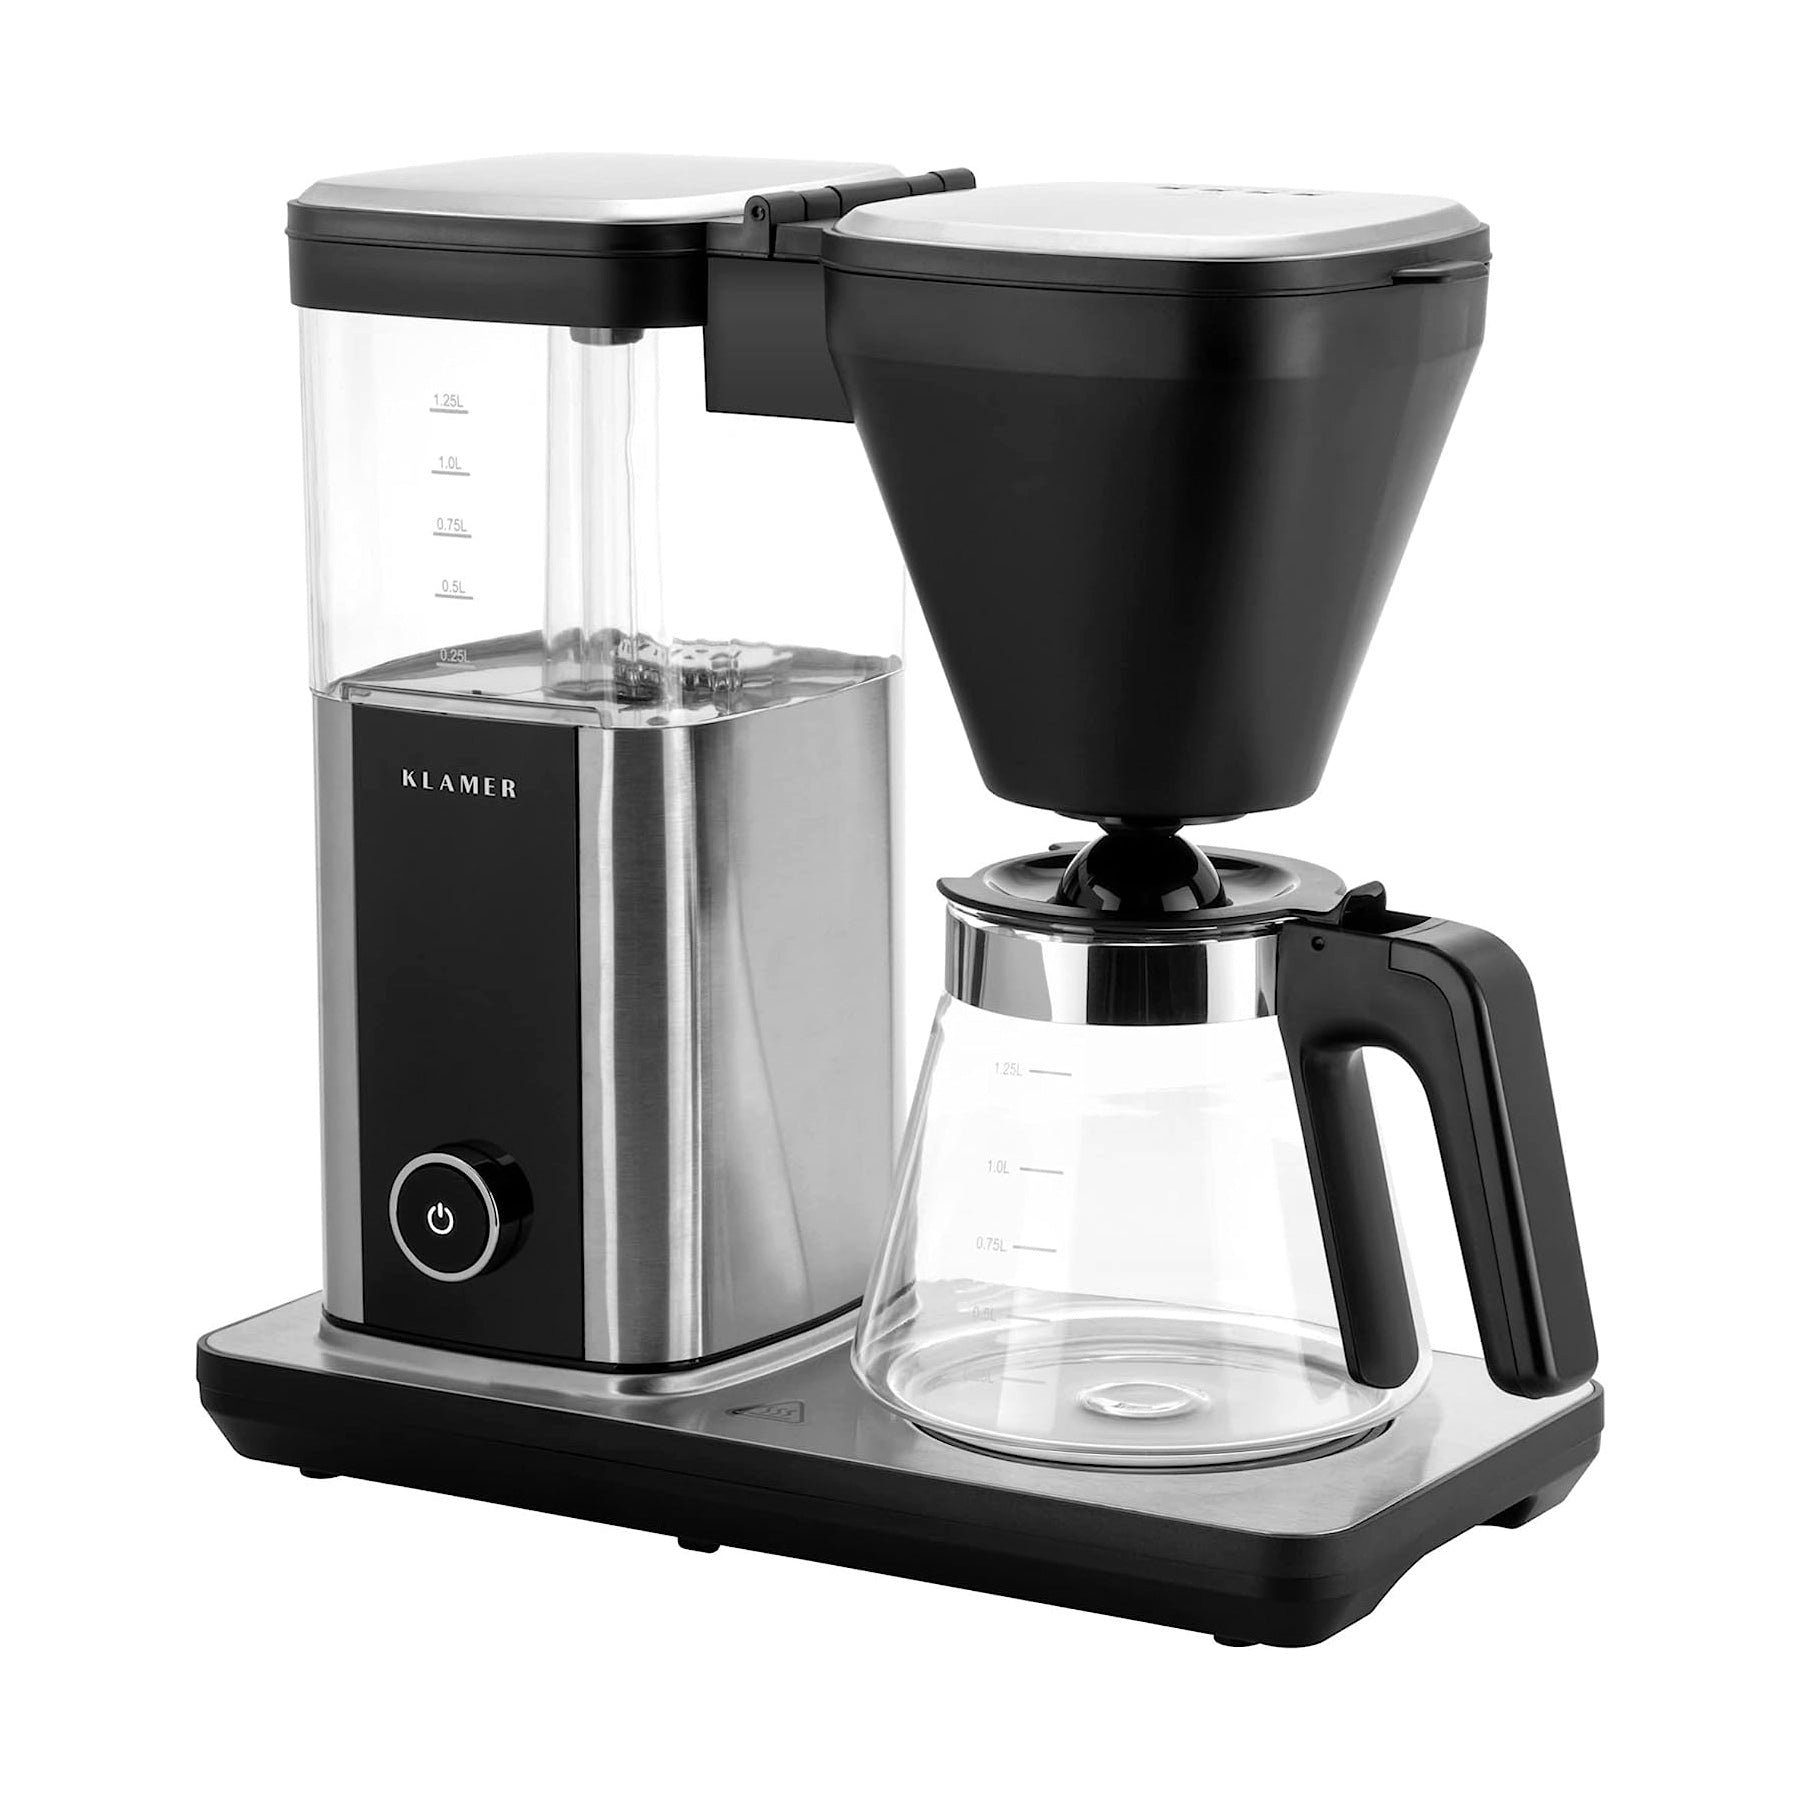 Filterkaffeemaschine mit 1,25L Fassung… Kaffeemaschine Kaffeebereiter KLAMER Glaskanne, mit KLAMER